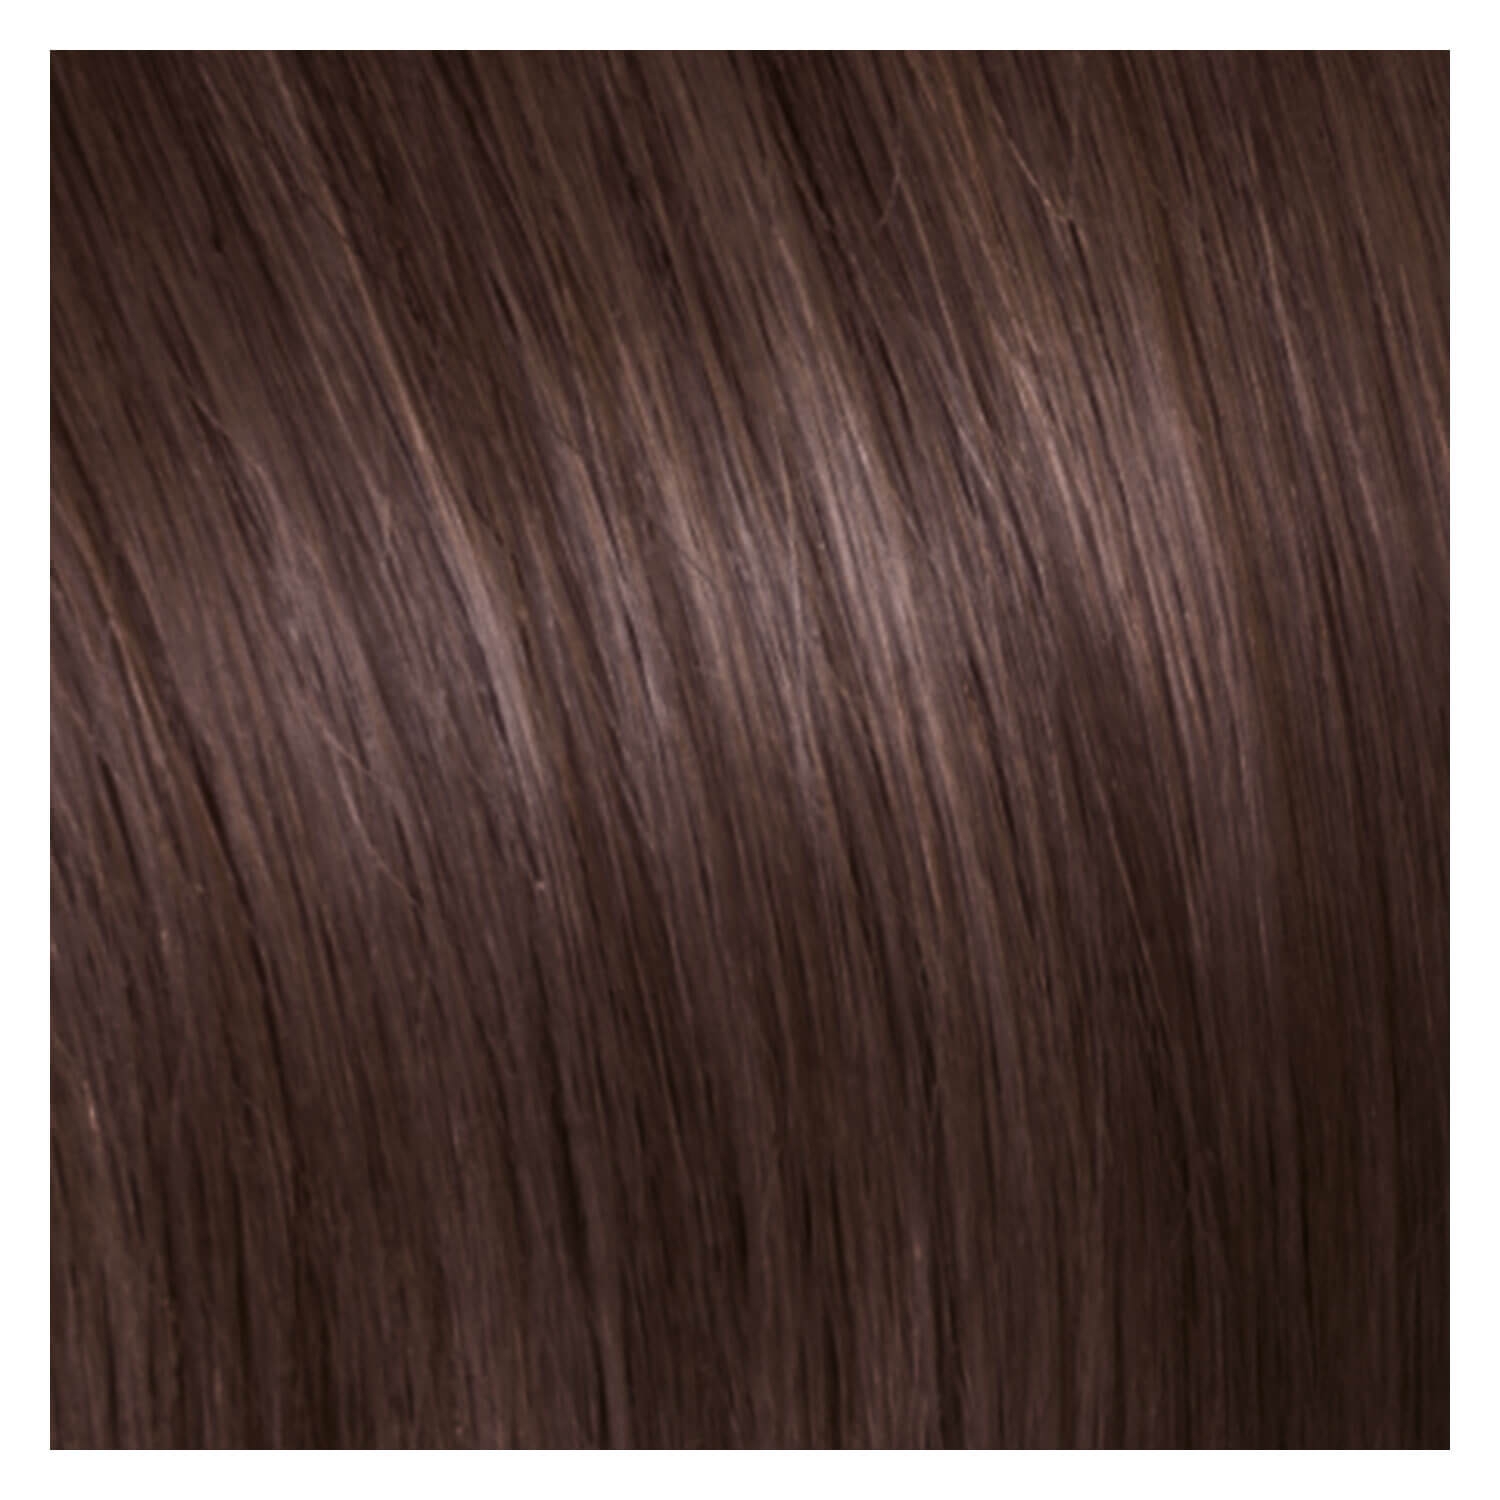 Produktbild von SHE Clip In-System Hair Extensions - 8 Dunkelblond 50/55cm/19cm